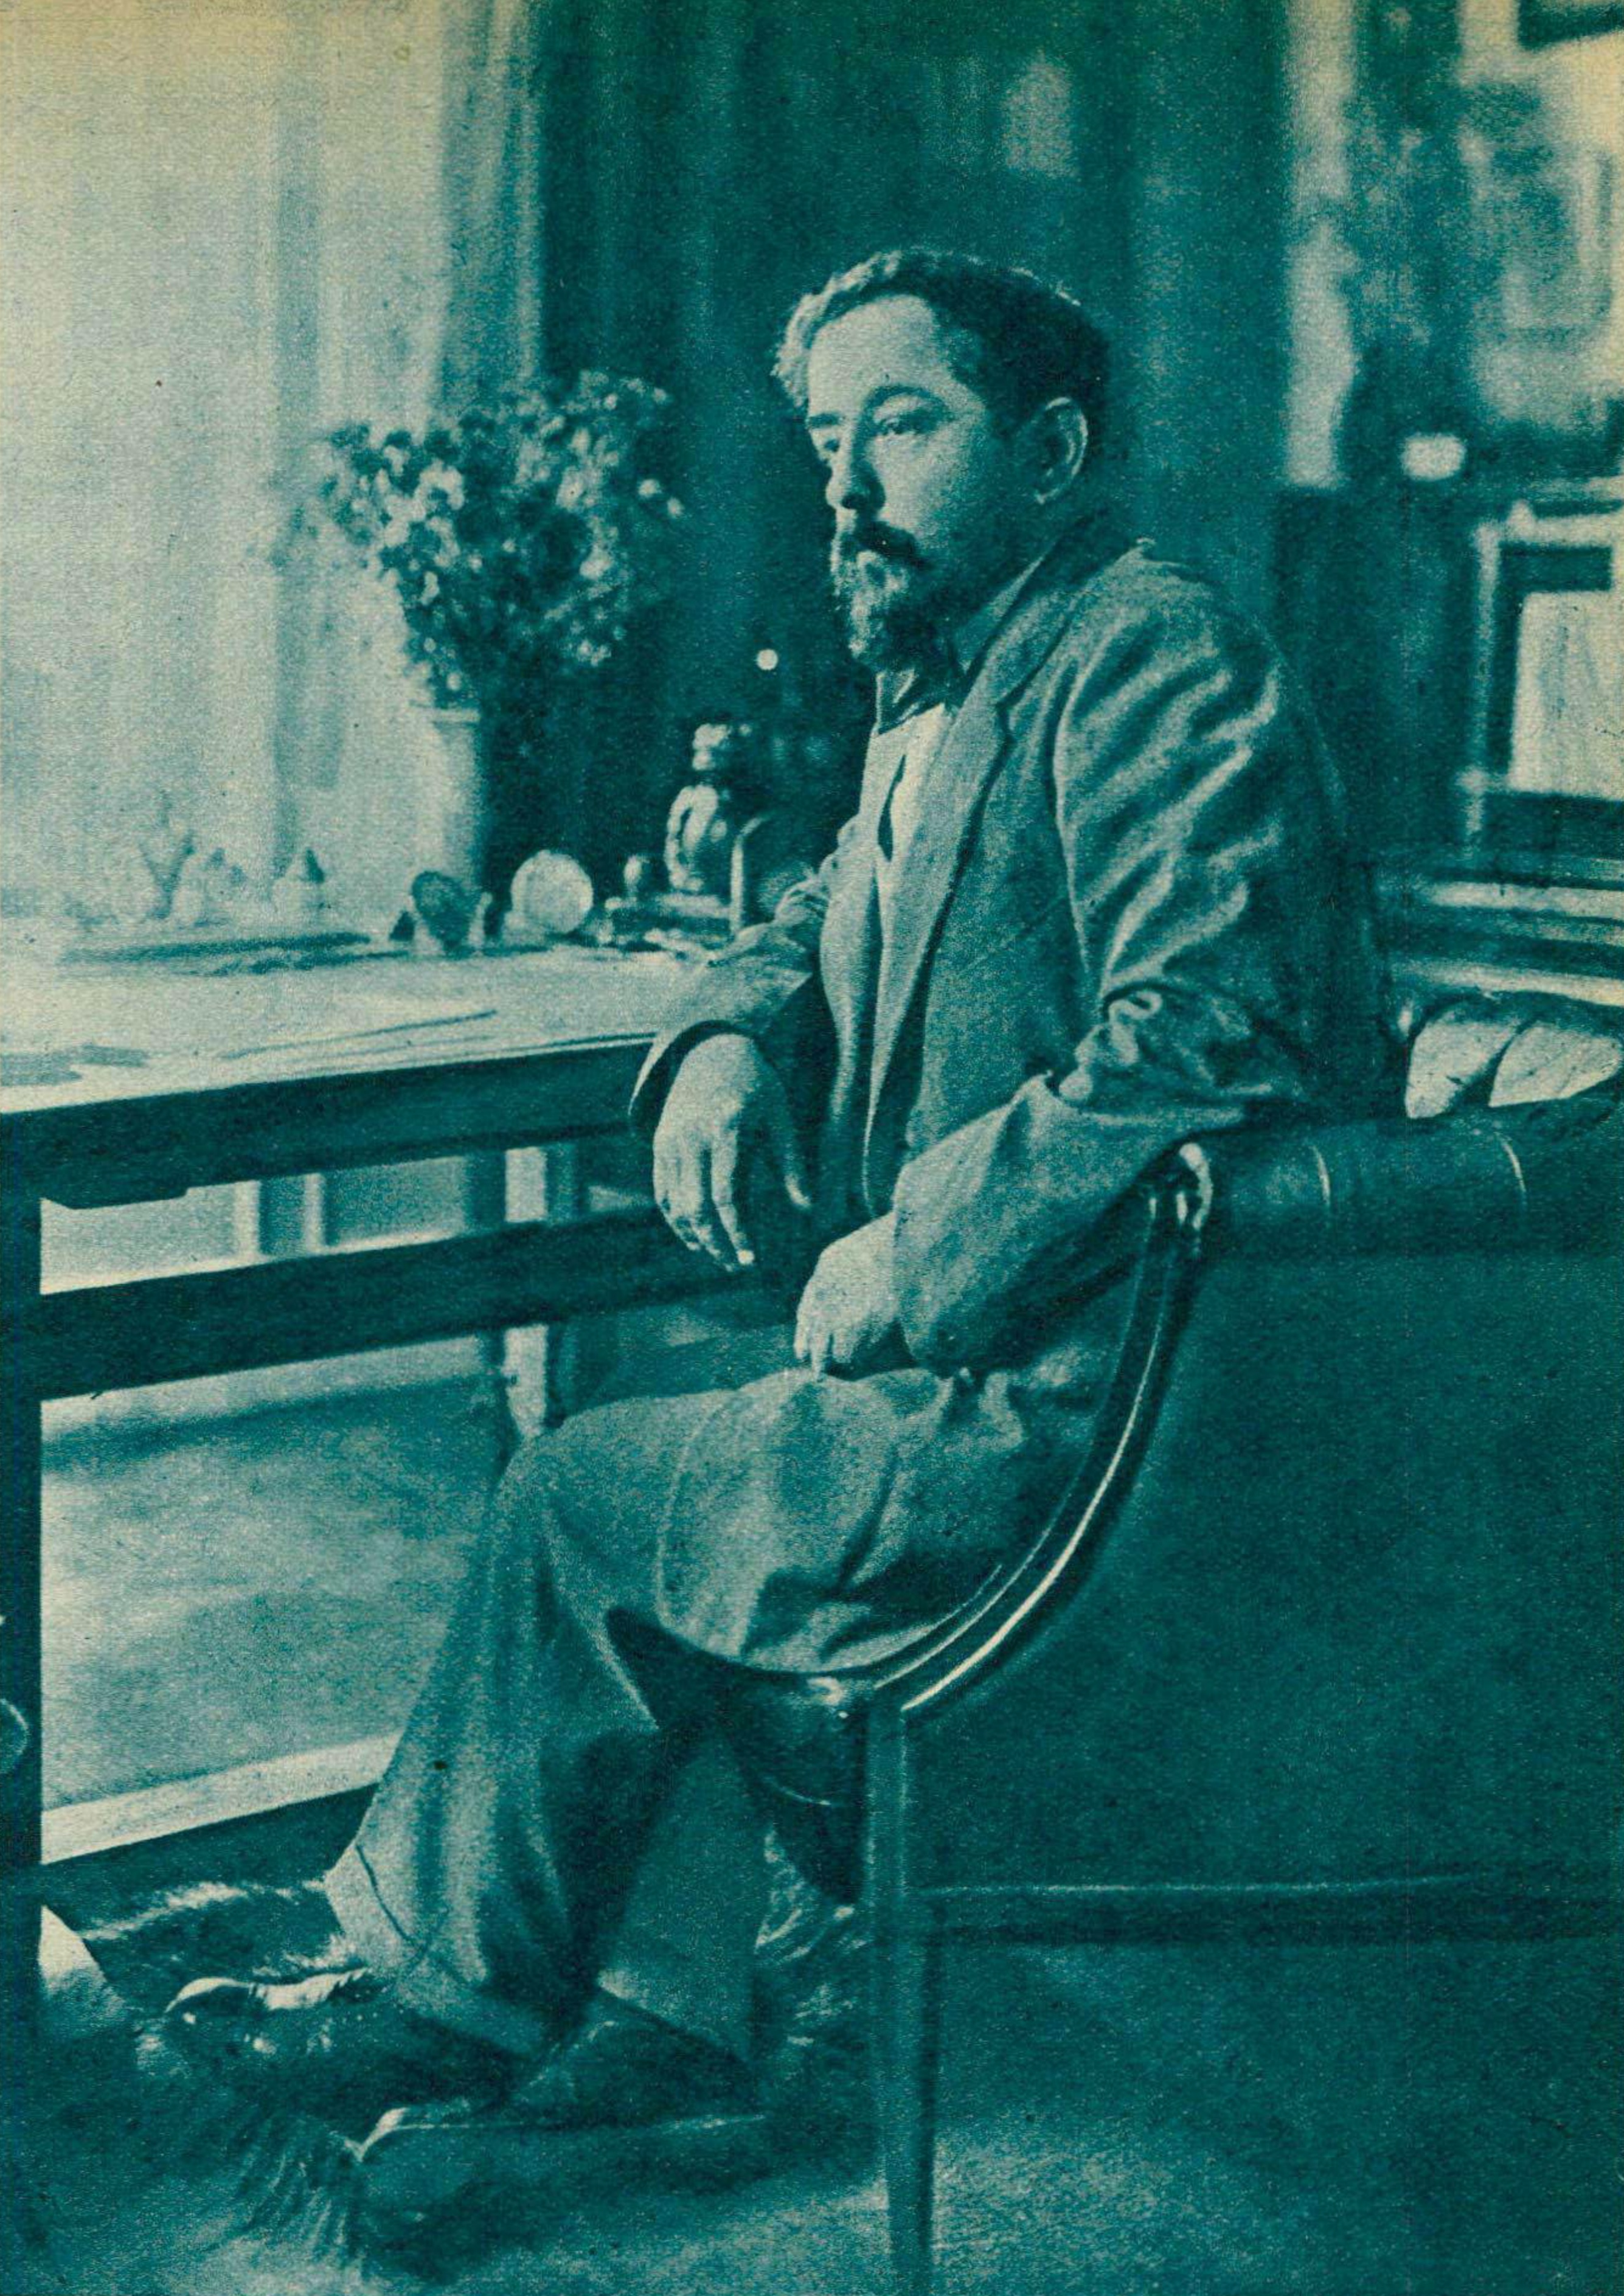 Claude DEBUSSY à son bureau de travail, un portrait fait par Photo Scherl, publié entre autres dans la revue Le Radio du 24 janvier 1936, No 668, page 149